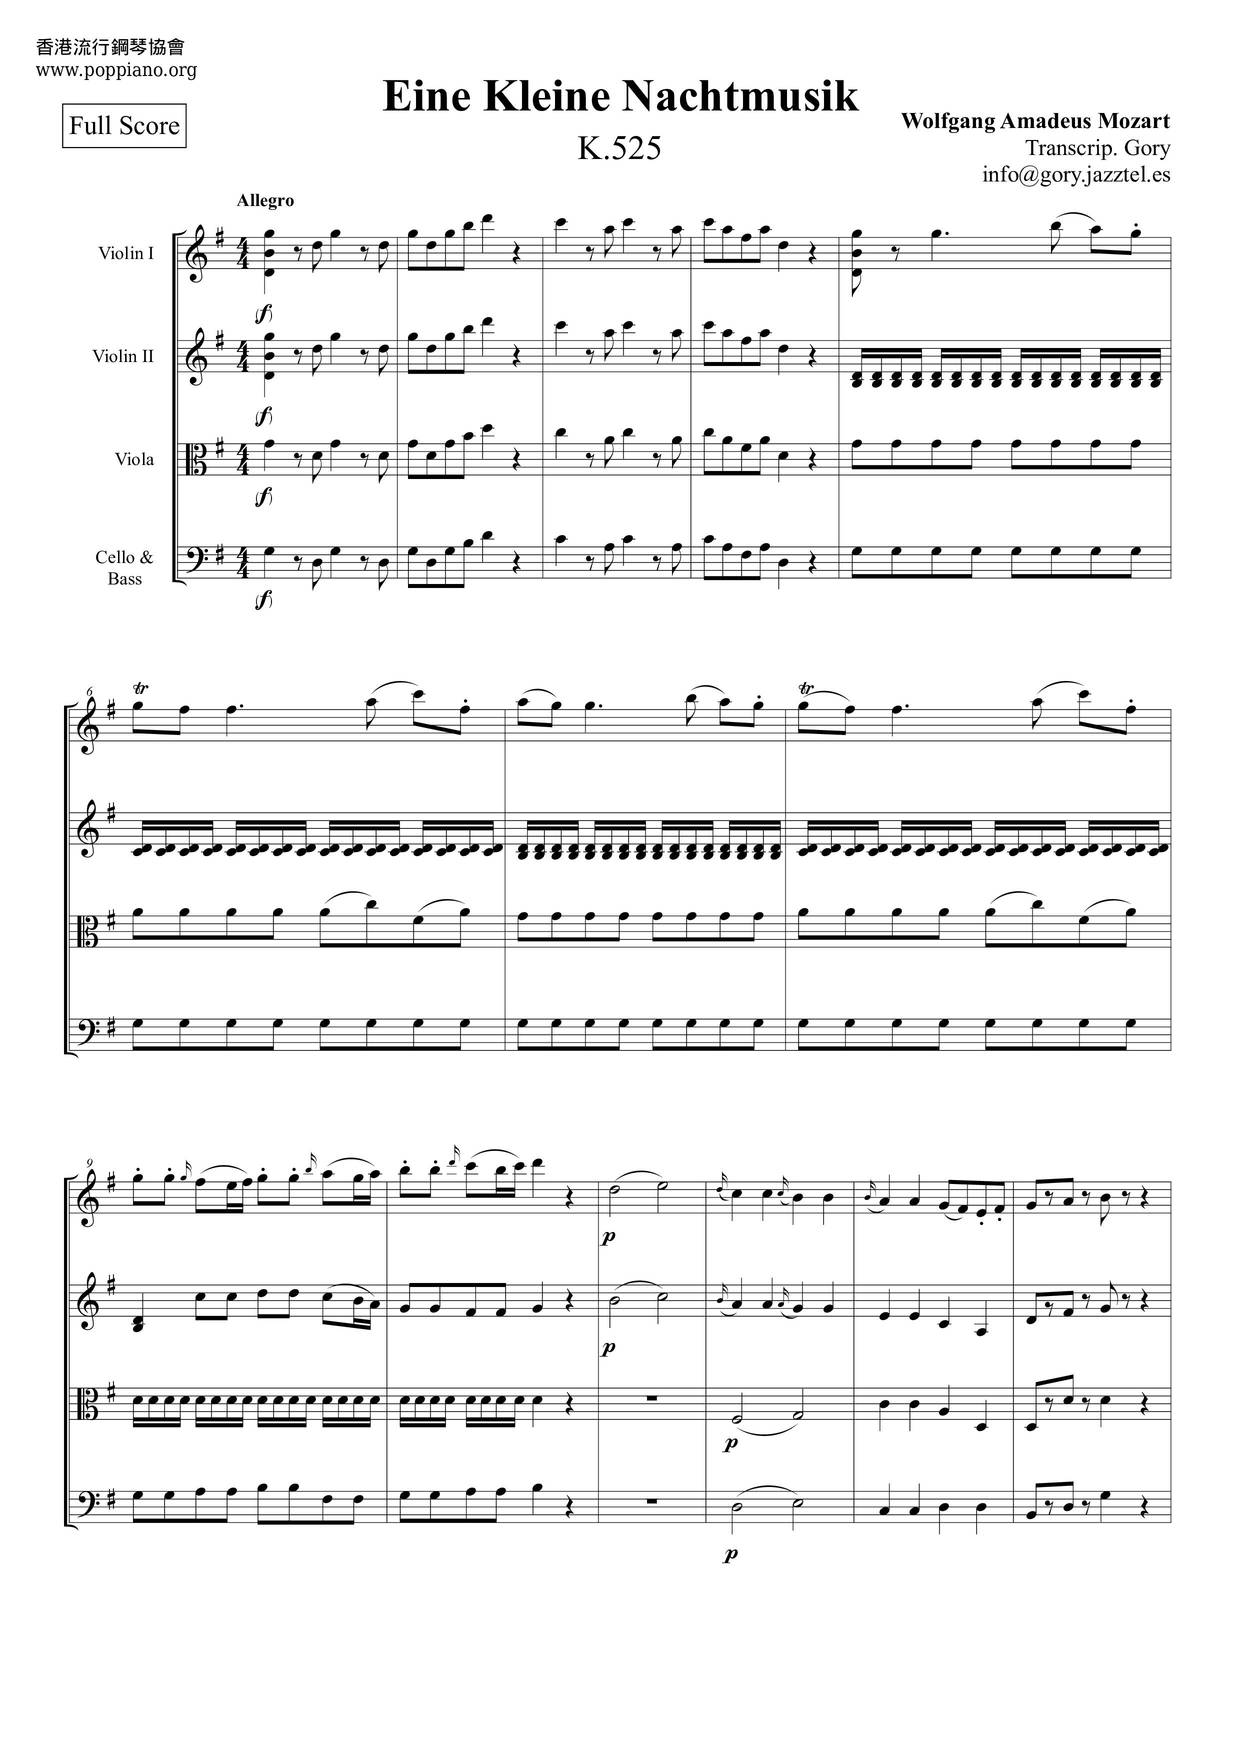 Serenade No. 13 in G Major, K. 525, Eine kleine Nachtmusik: I. Allegro Score